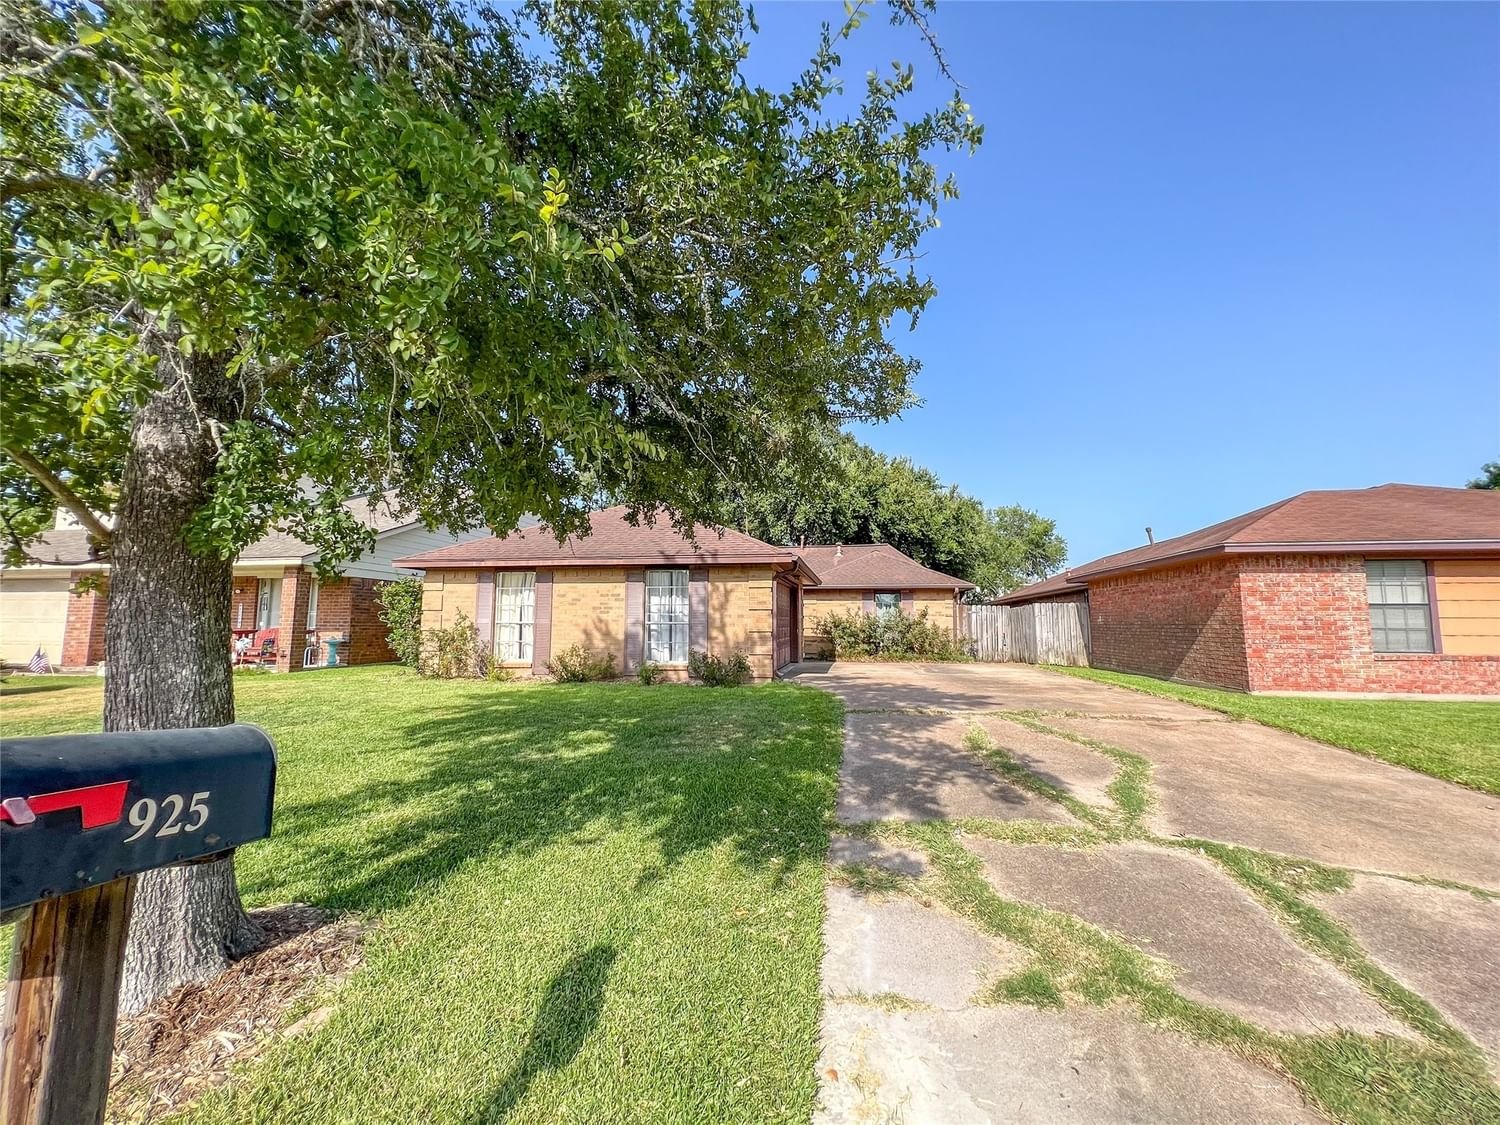 Real estate property located at 925 6th, Harris, La Porte, La Porte, TX, US